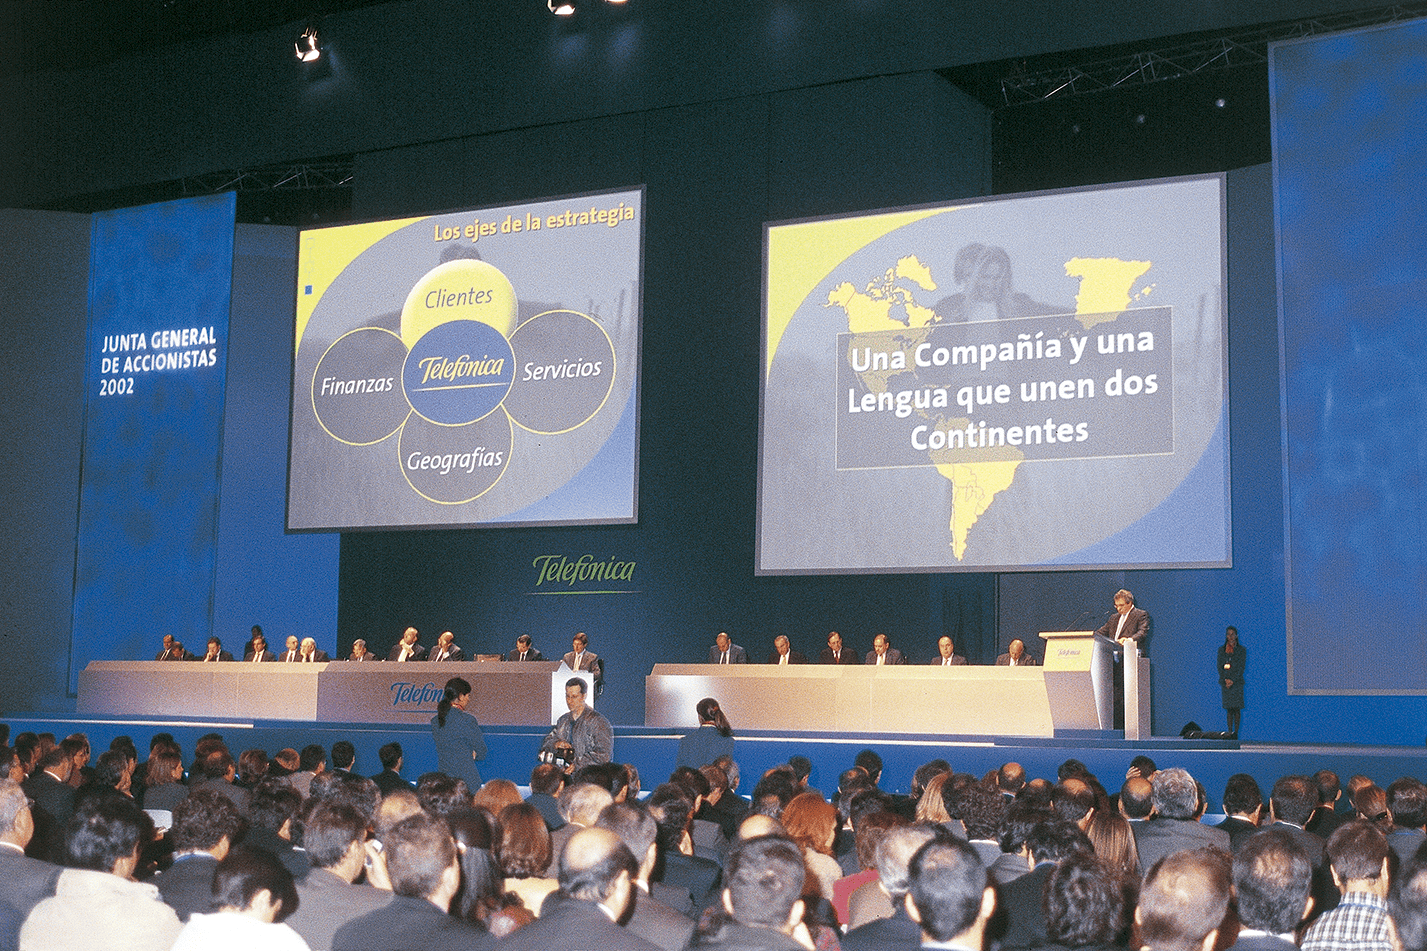 Junta General de Accionistas 2002